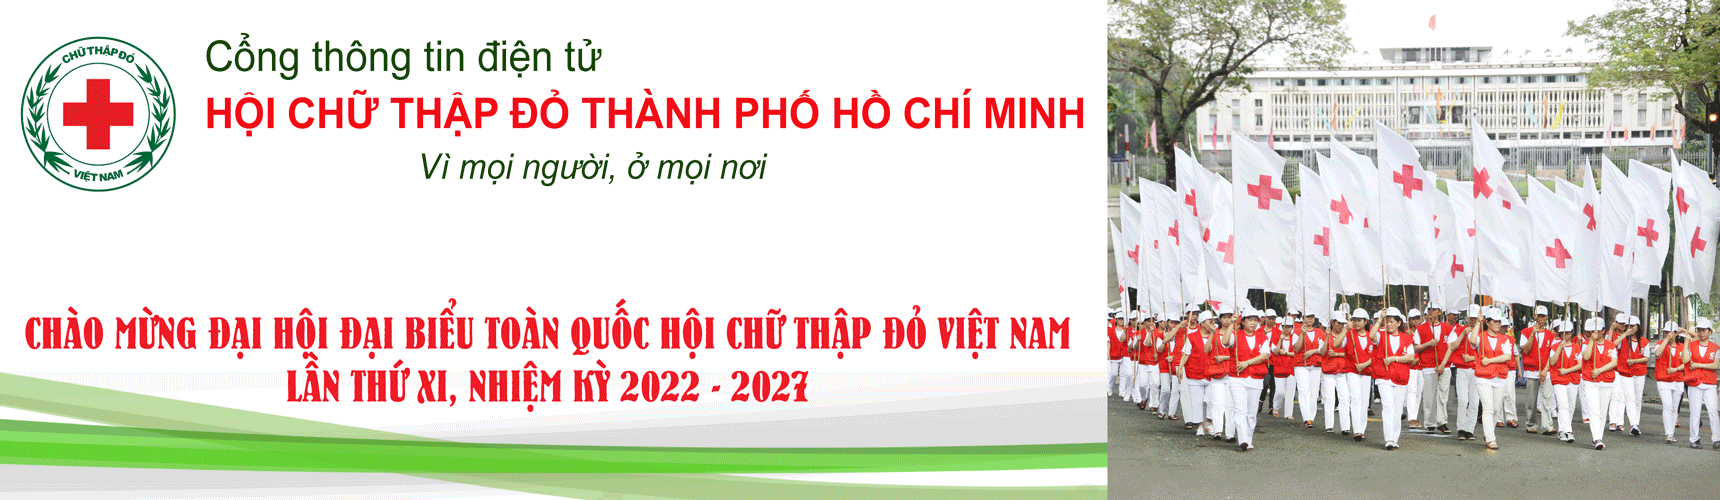 Hội Chữ thập đỏ Thành phố Hồ Chí Minh | Trao tặng thẻ bảo hiểm y tế cho người dân khó khăn trên địa bàn Quận 5